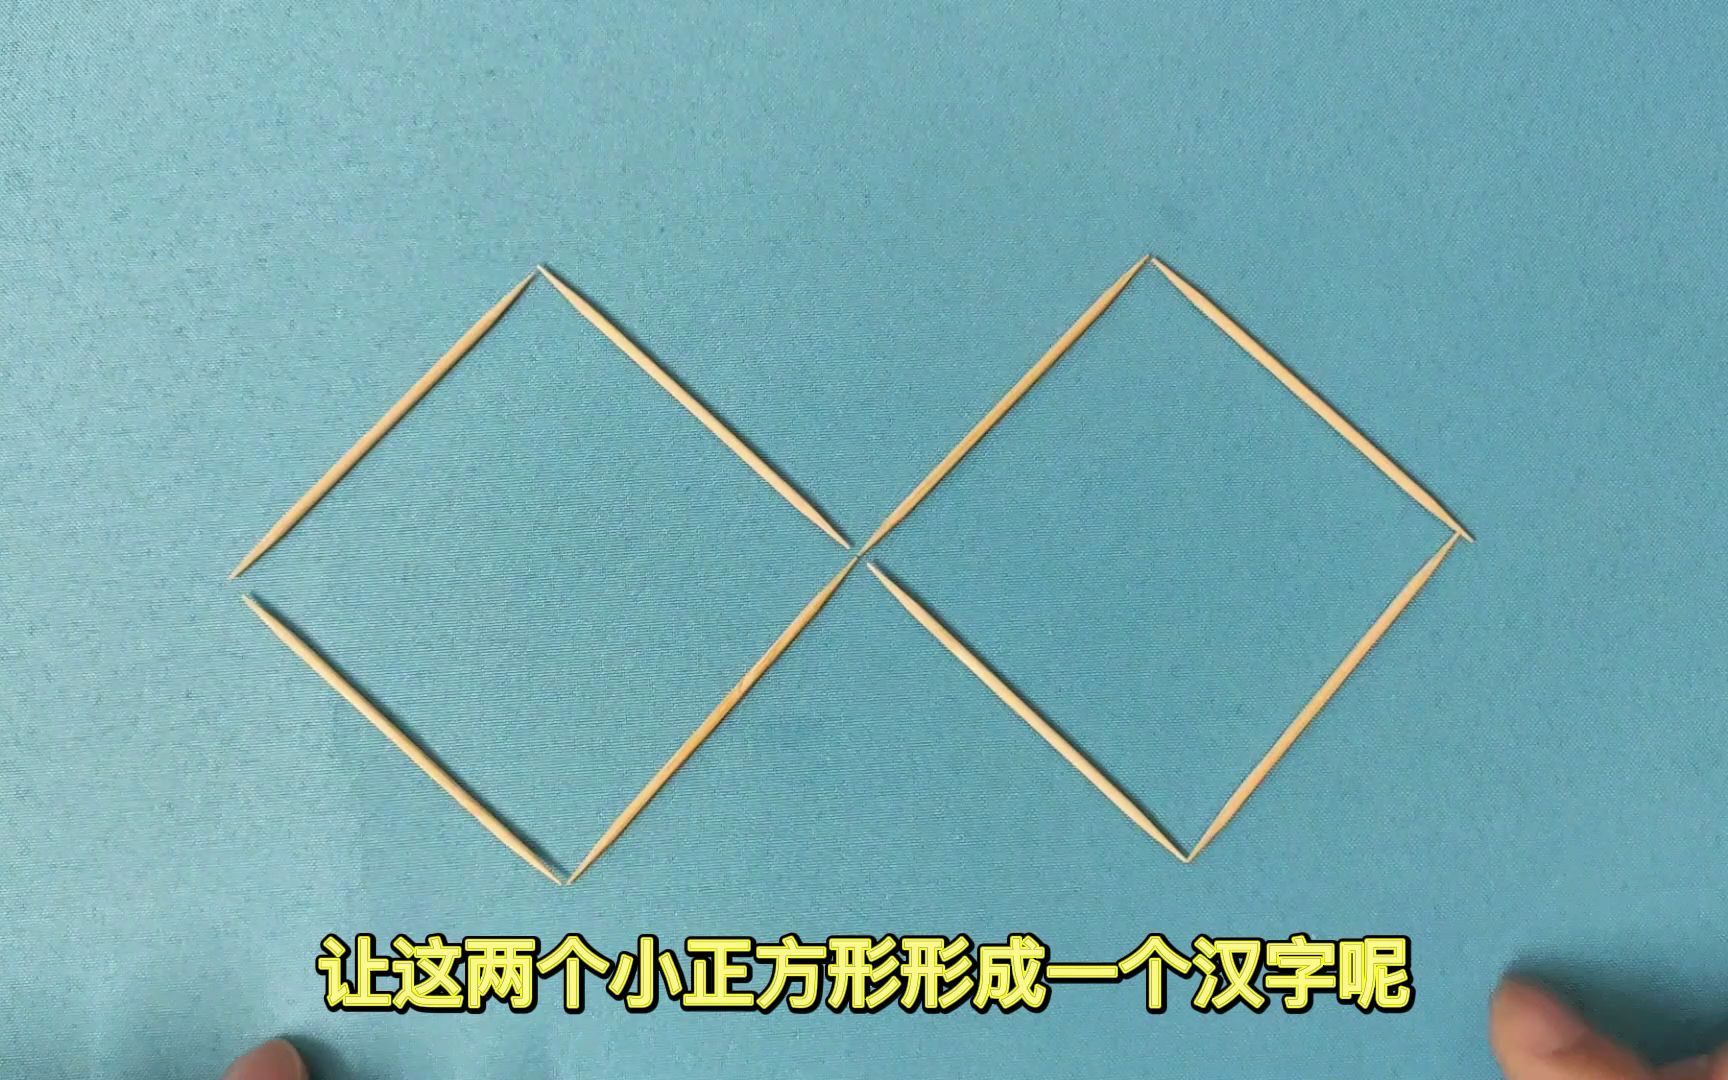 移动两根牙签，如何形成一个汉字，你能想到几种答案？